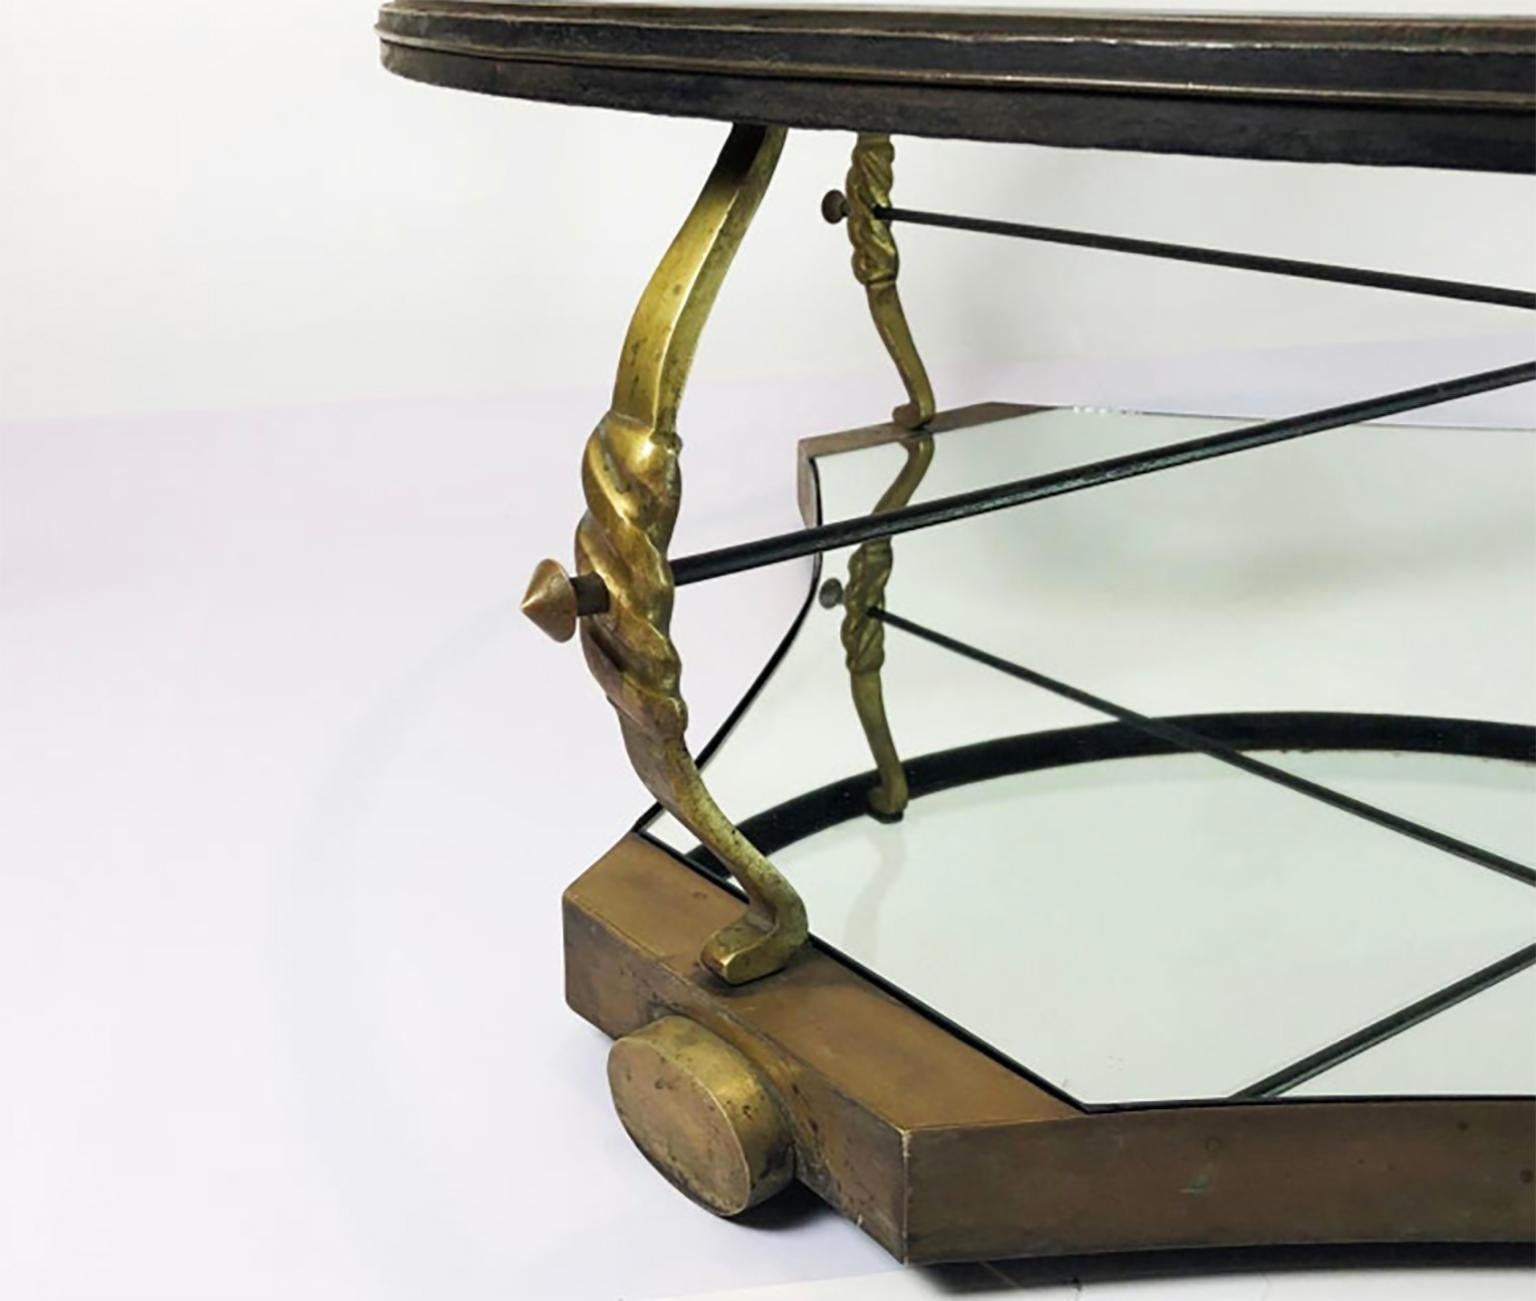 Hergestellt in Mexiko, ca. 1950er Jahre, entworfen von Arturo Pani. Der Tisch hat einen originalen Spiegel und Glas, kann poliert geliefert werden und kann zum besseren Versand zerlegt werden.
Wir haben Informationen gefunden, dass der Designer